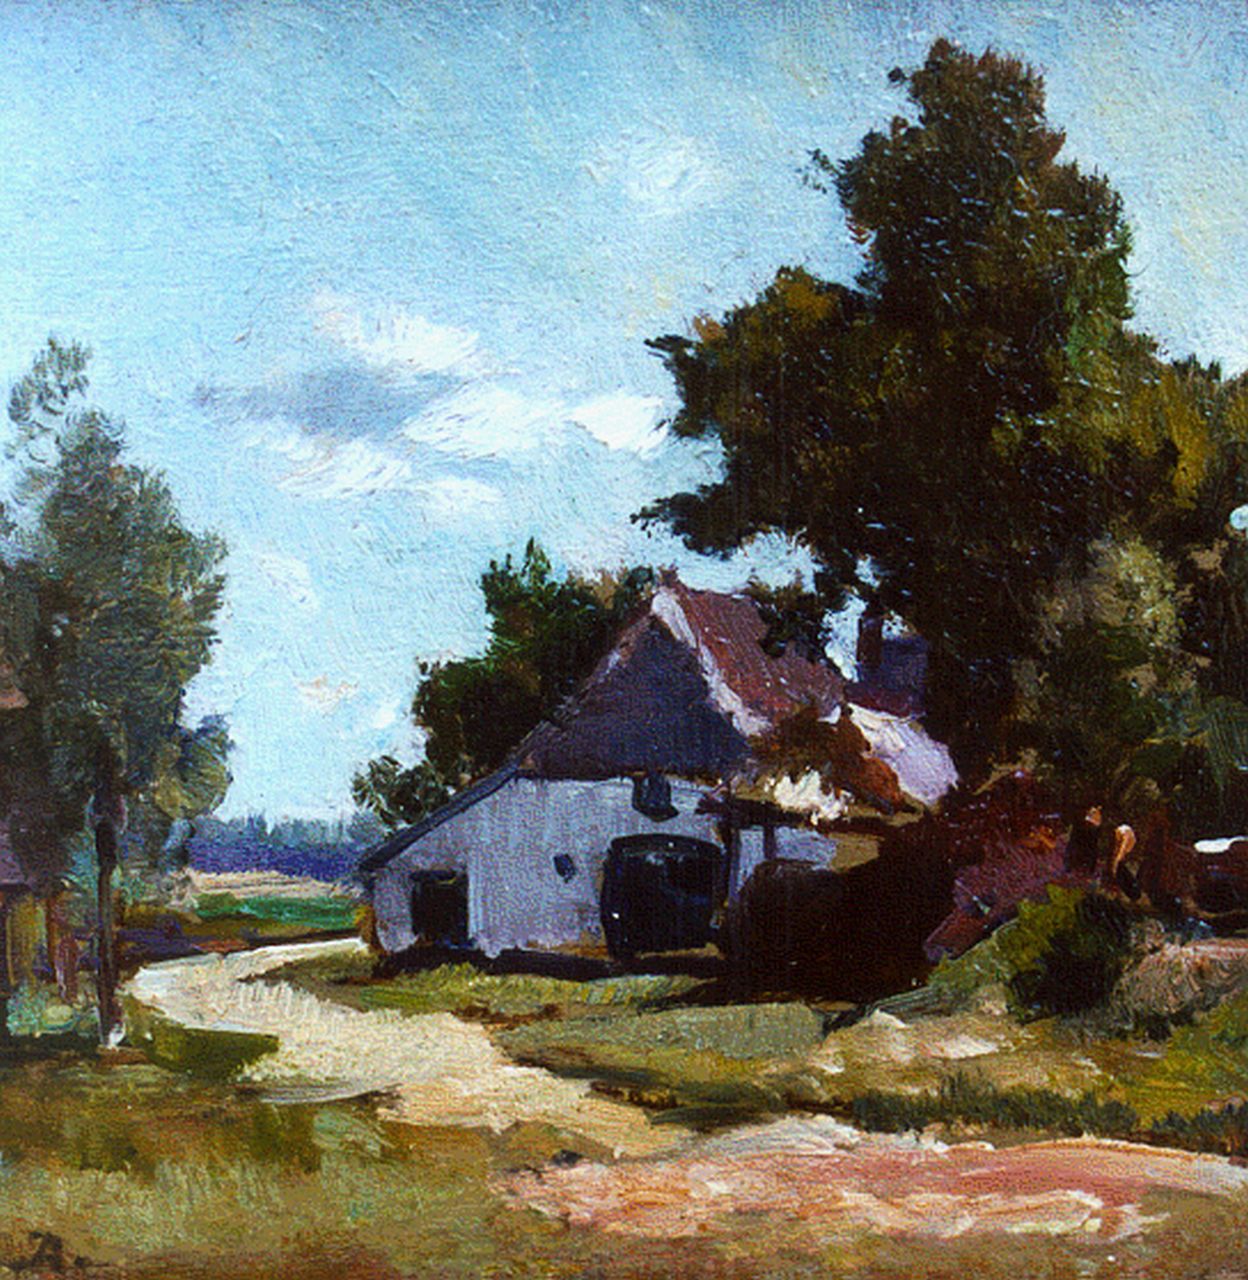 Akkeringa J.E.H.  | 'Johannes Evert' Hendrik Akkeringa, Boerderij in een zomers landschap, olieverf op paneel 12,1 x 12,3 cm, gesigneerd linksonder met monogram